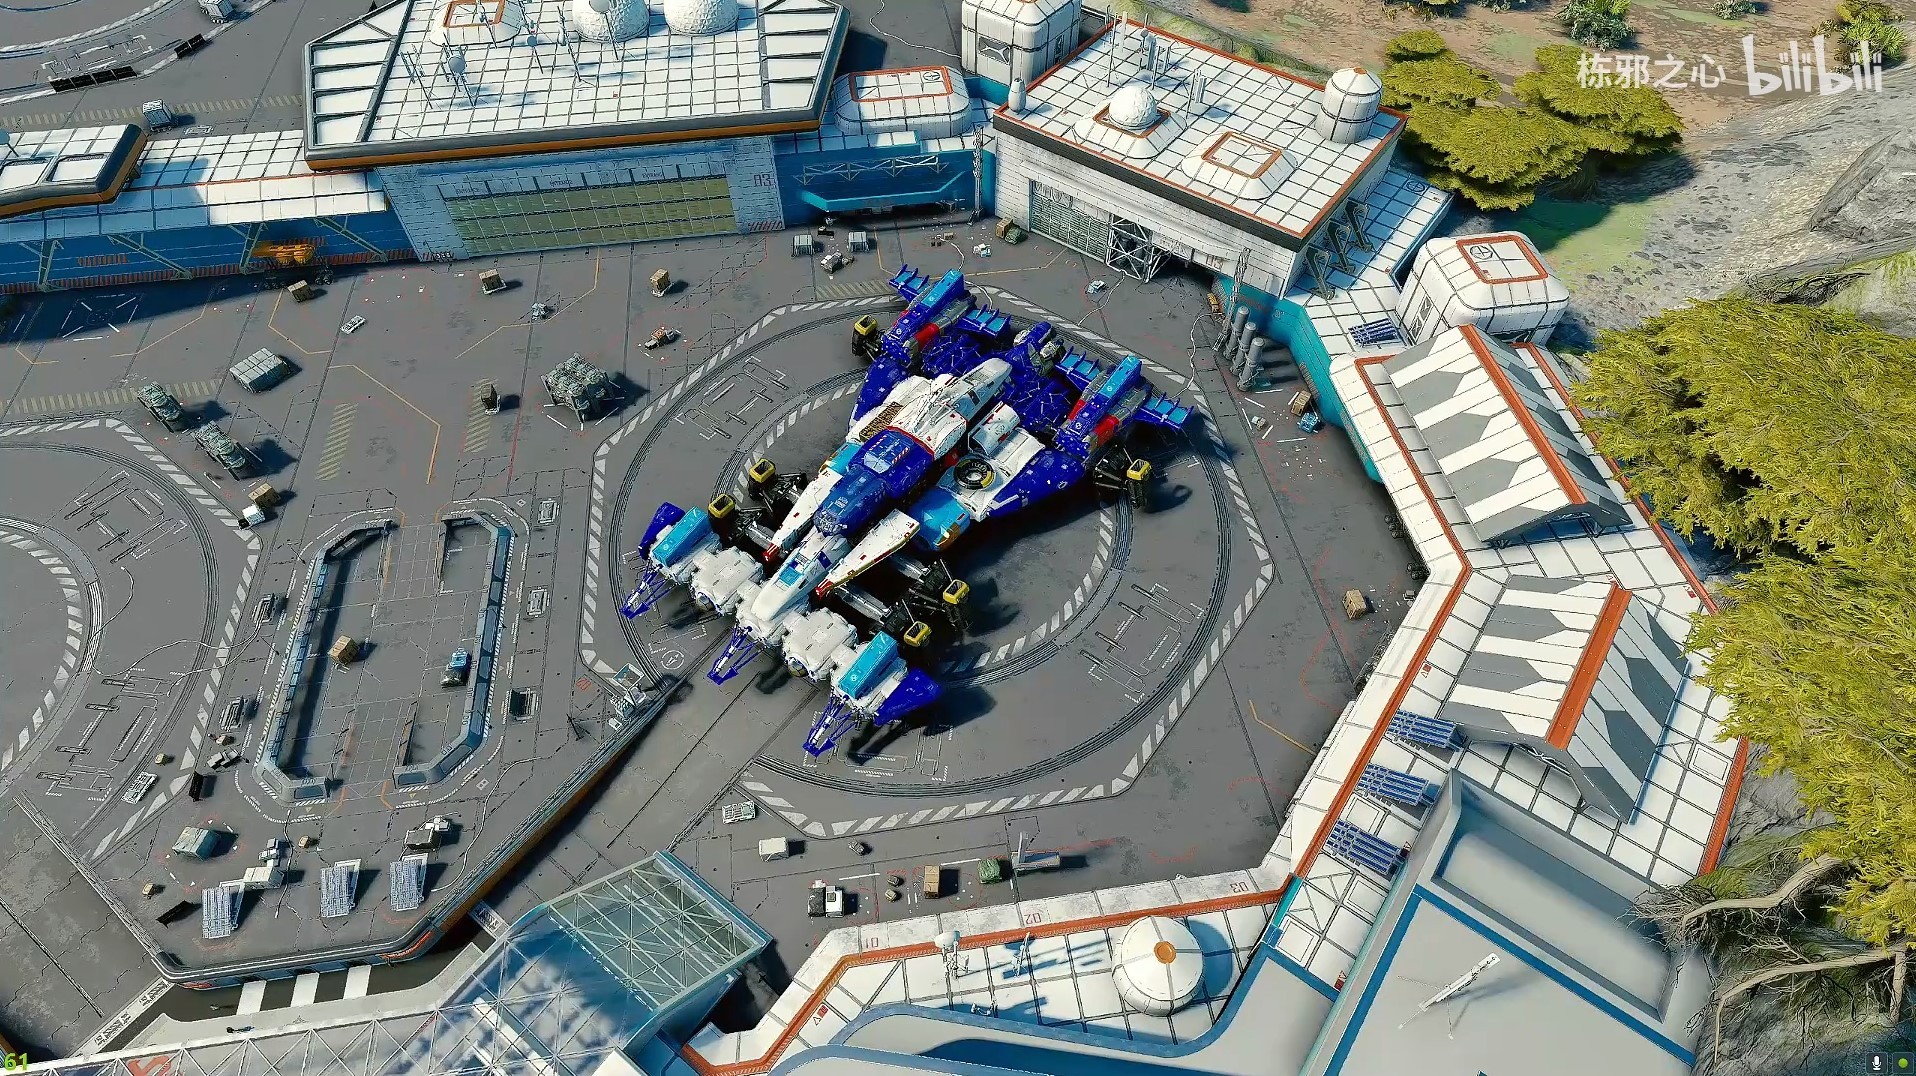 《星空》高智能方程式賽車阿斯拉達號飛船組裝展示